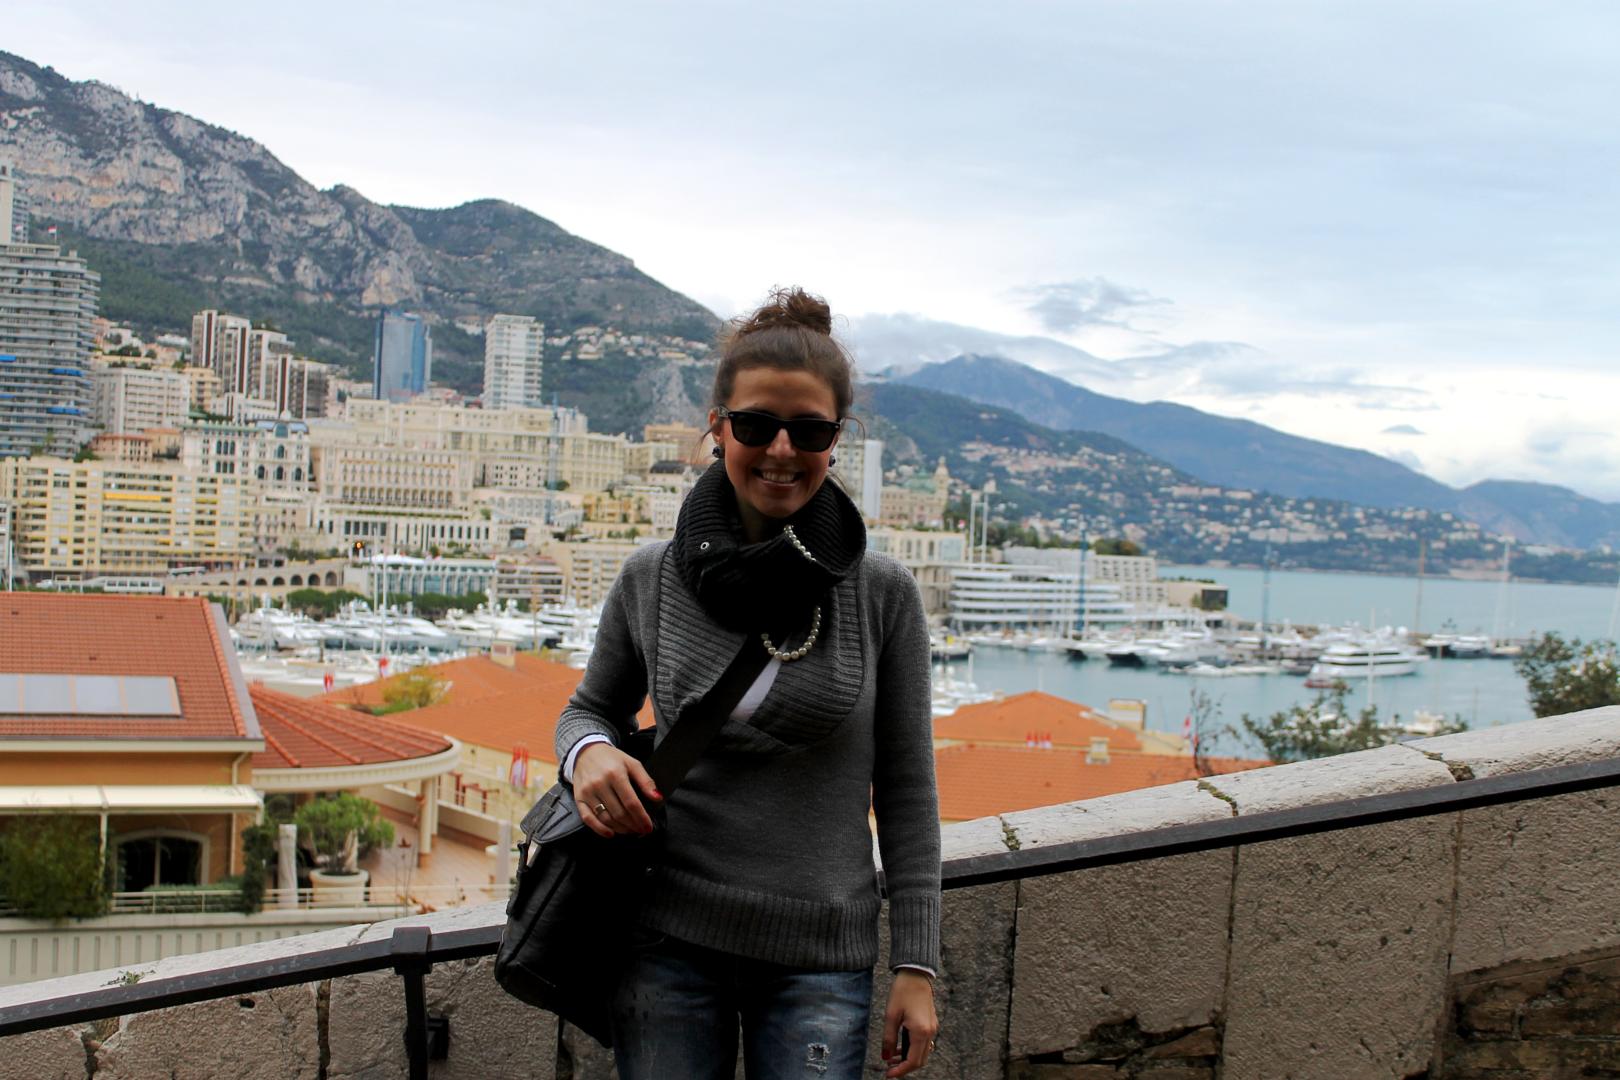 podróży żony ciąg dalszy, dziś Monako i oczywiście Monte Carlo